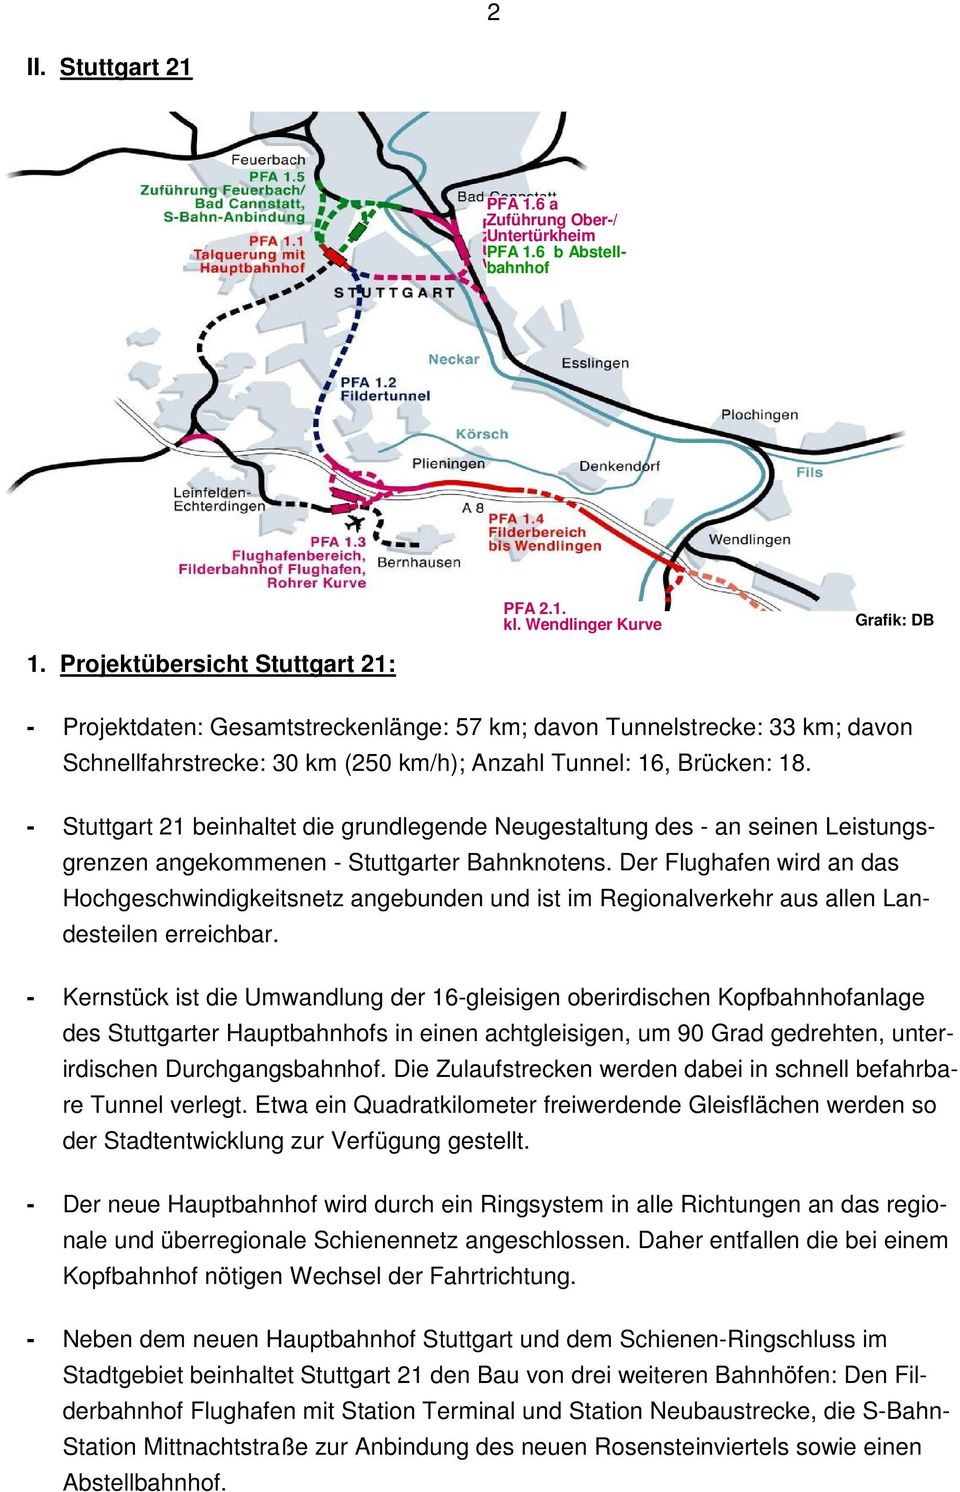 - Stuttgart 21 beinhaltet die grundlegende Neugestaltung des - an seinen Leistungsgrenzen angekommenen - Stuttgarter Bahnknotens.